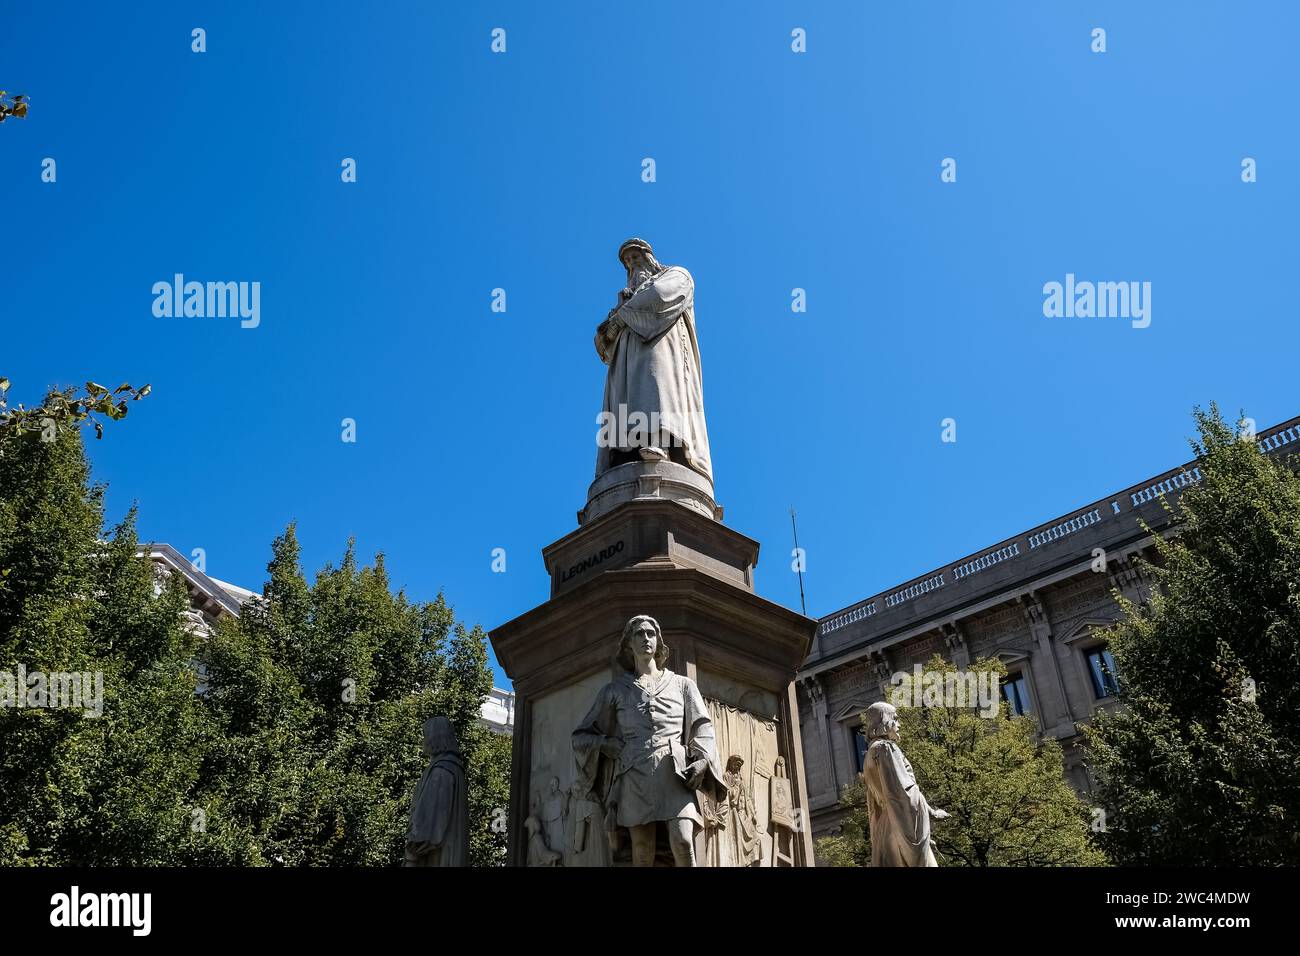 Dettaglio del monumento a Leonardo da Vinci, un gruppo scultoreo commemorativo situato in Piazza della Scala di Milano Foto Stock